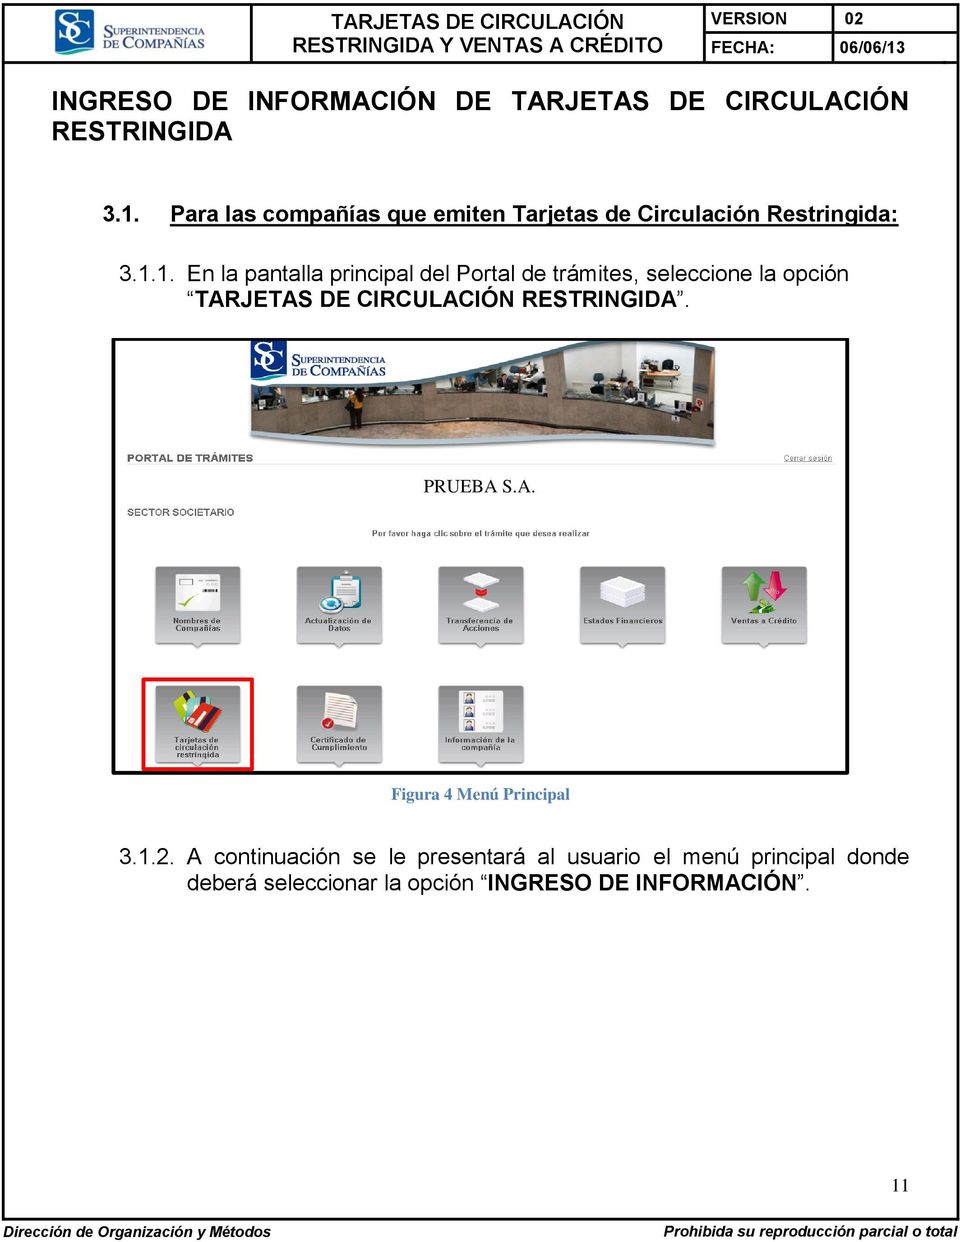 1. En la pantalla principal del Portal de trámites, seleccione la opción TARJETAS DE CIRCULACIÓN